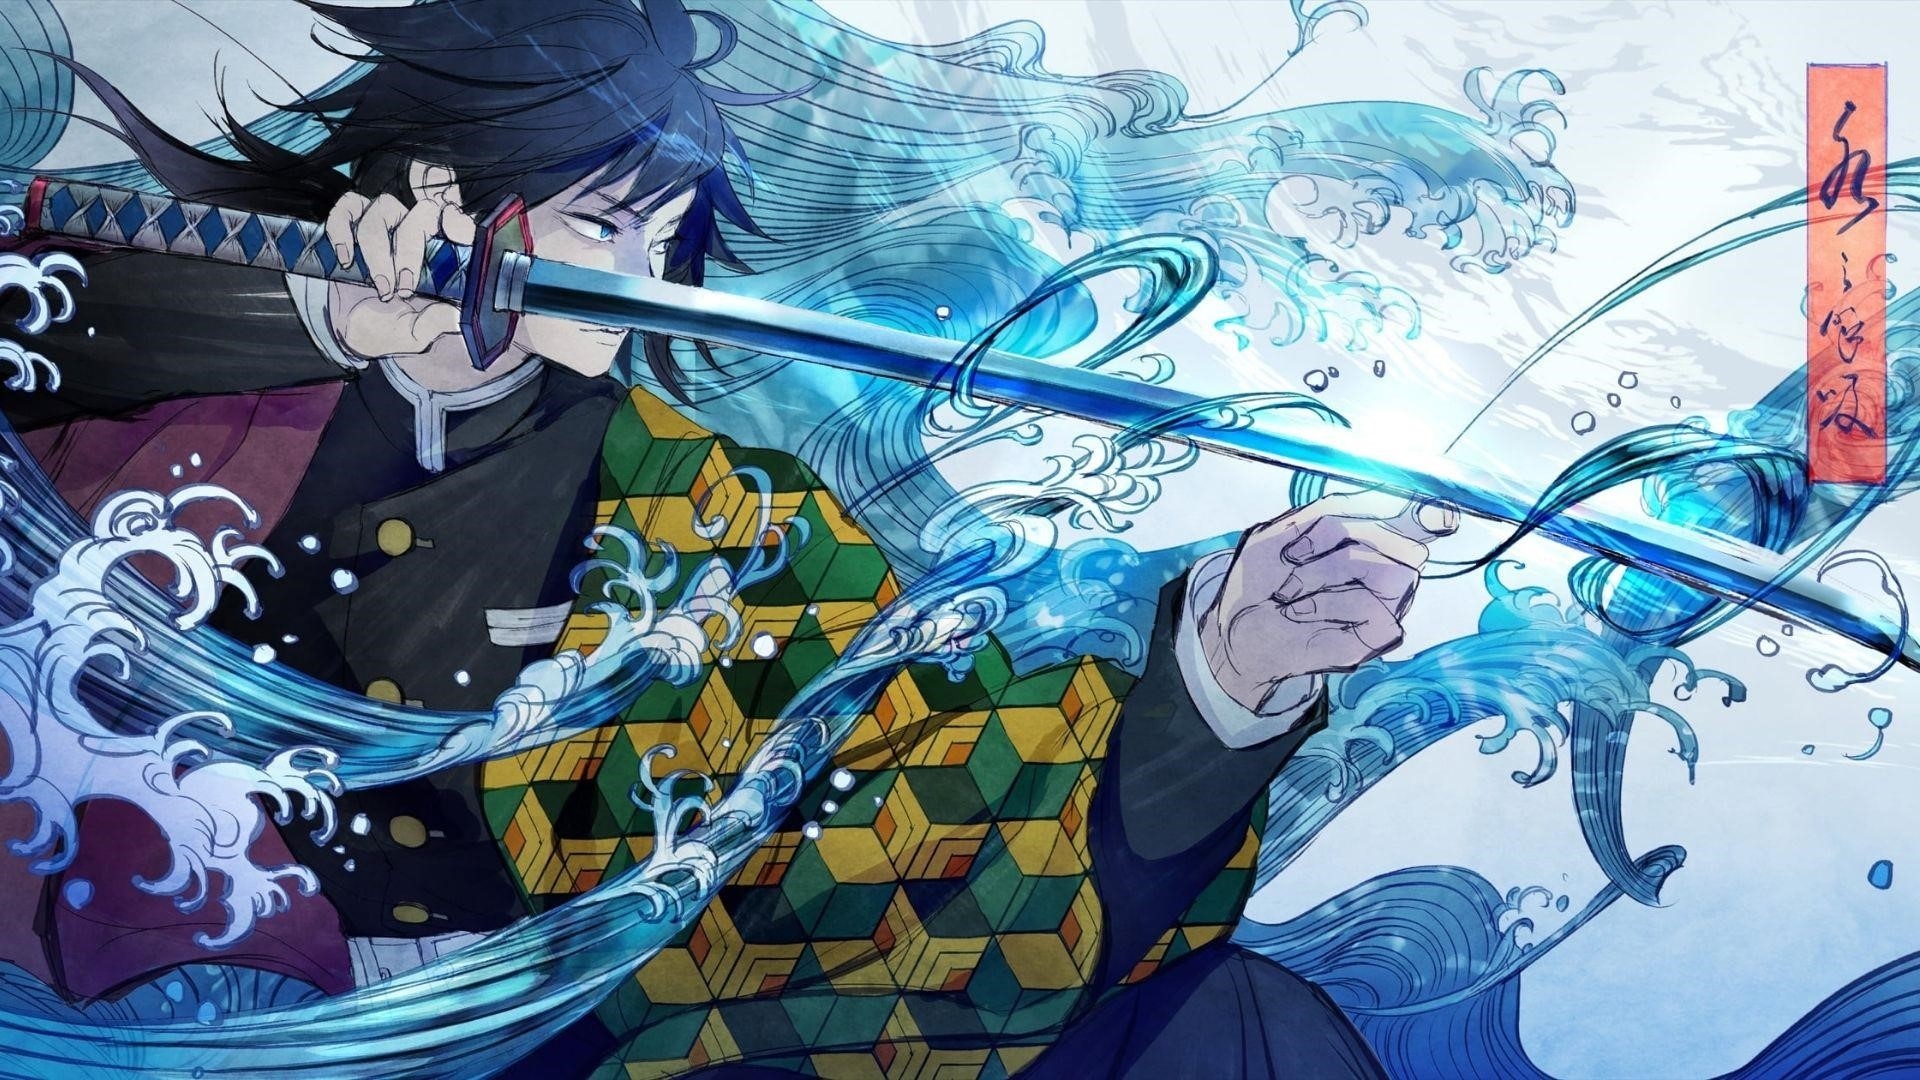 Hình ảnh của anime về kiếm sĩ diệt quỷ rất đẹp.